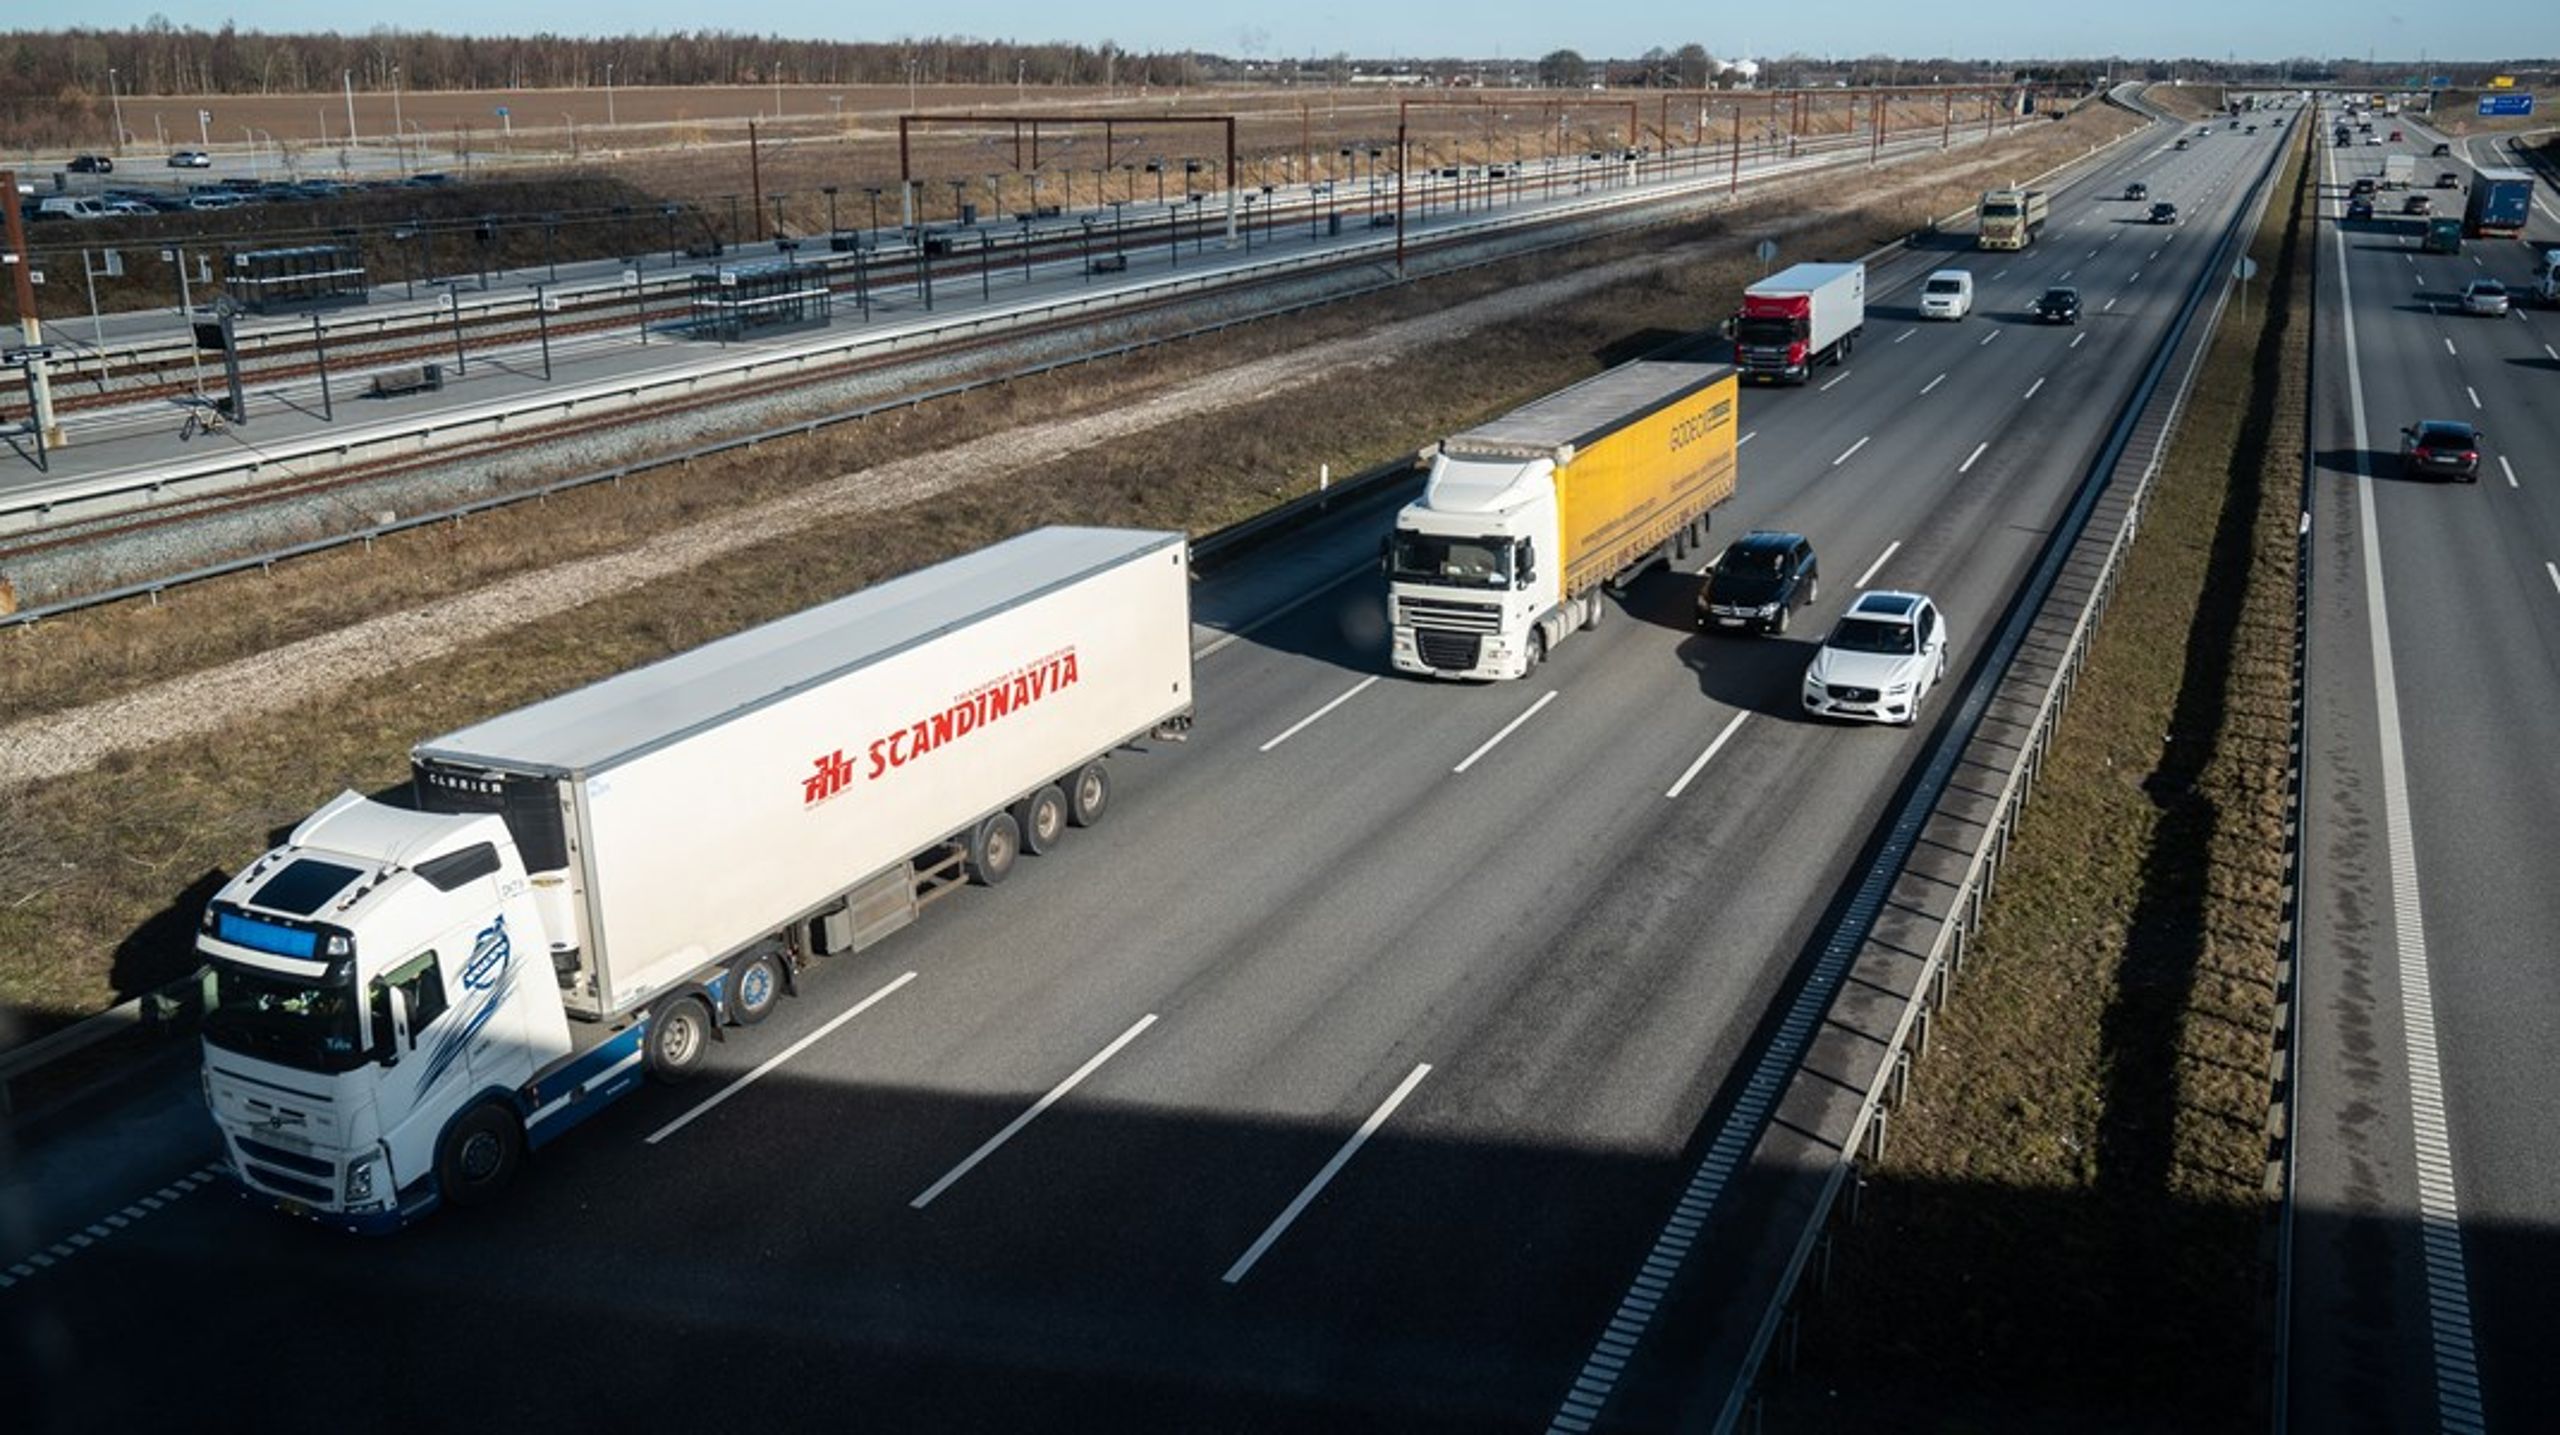 Reglerne
gør cabotagekørsel så besværlig, at udenlandske vognmænd helt siger nej til at
tage varer med på tilbagevejen, når de har leveret varer i Danmark, skriver Martin Aabak.